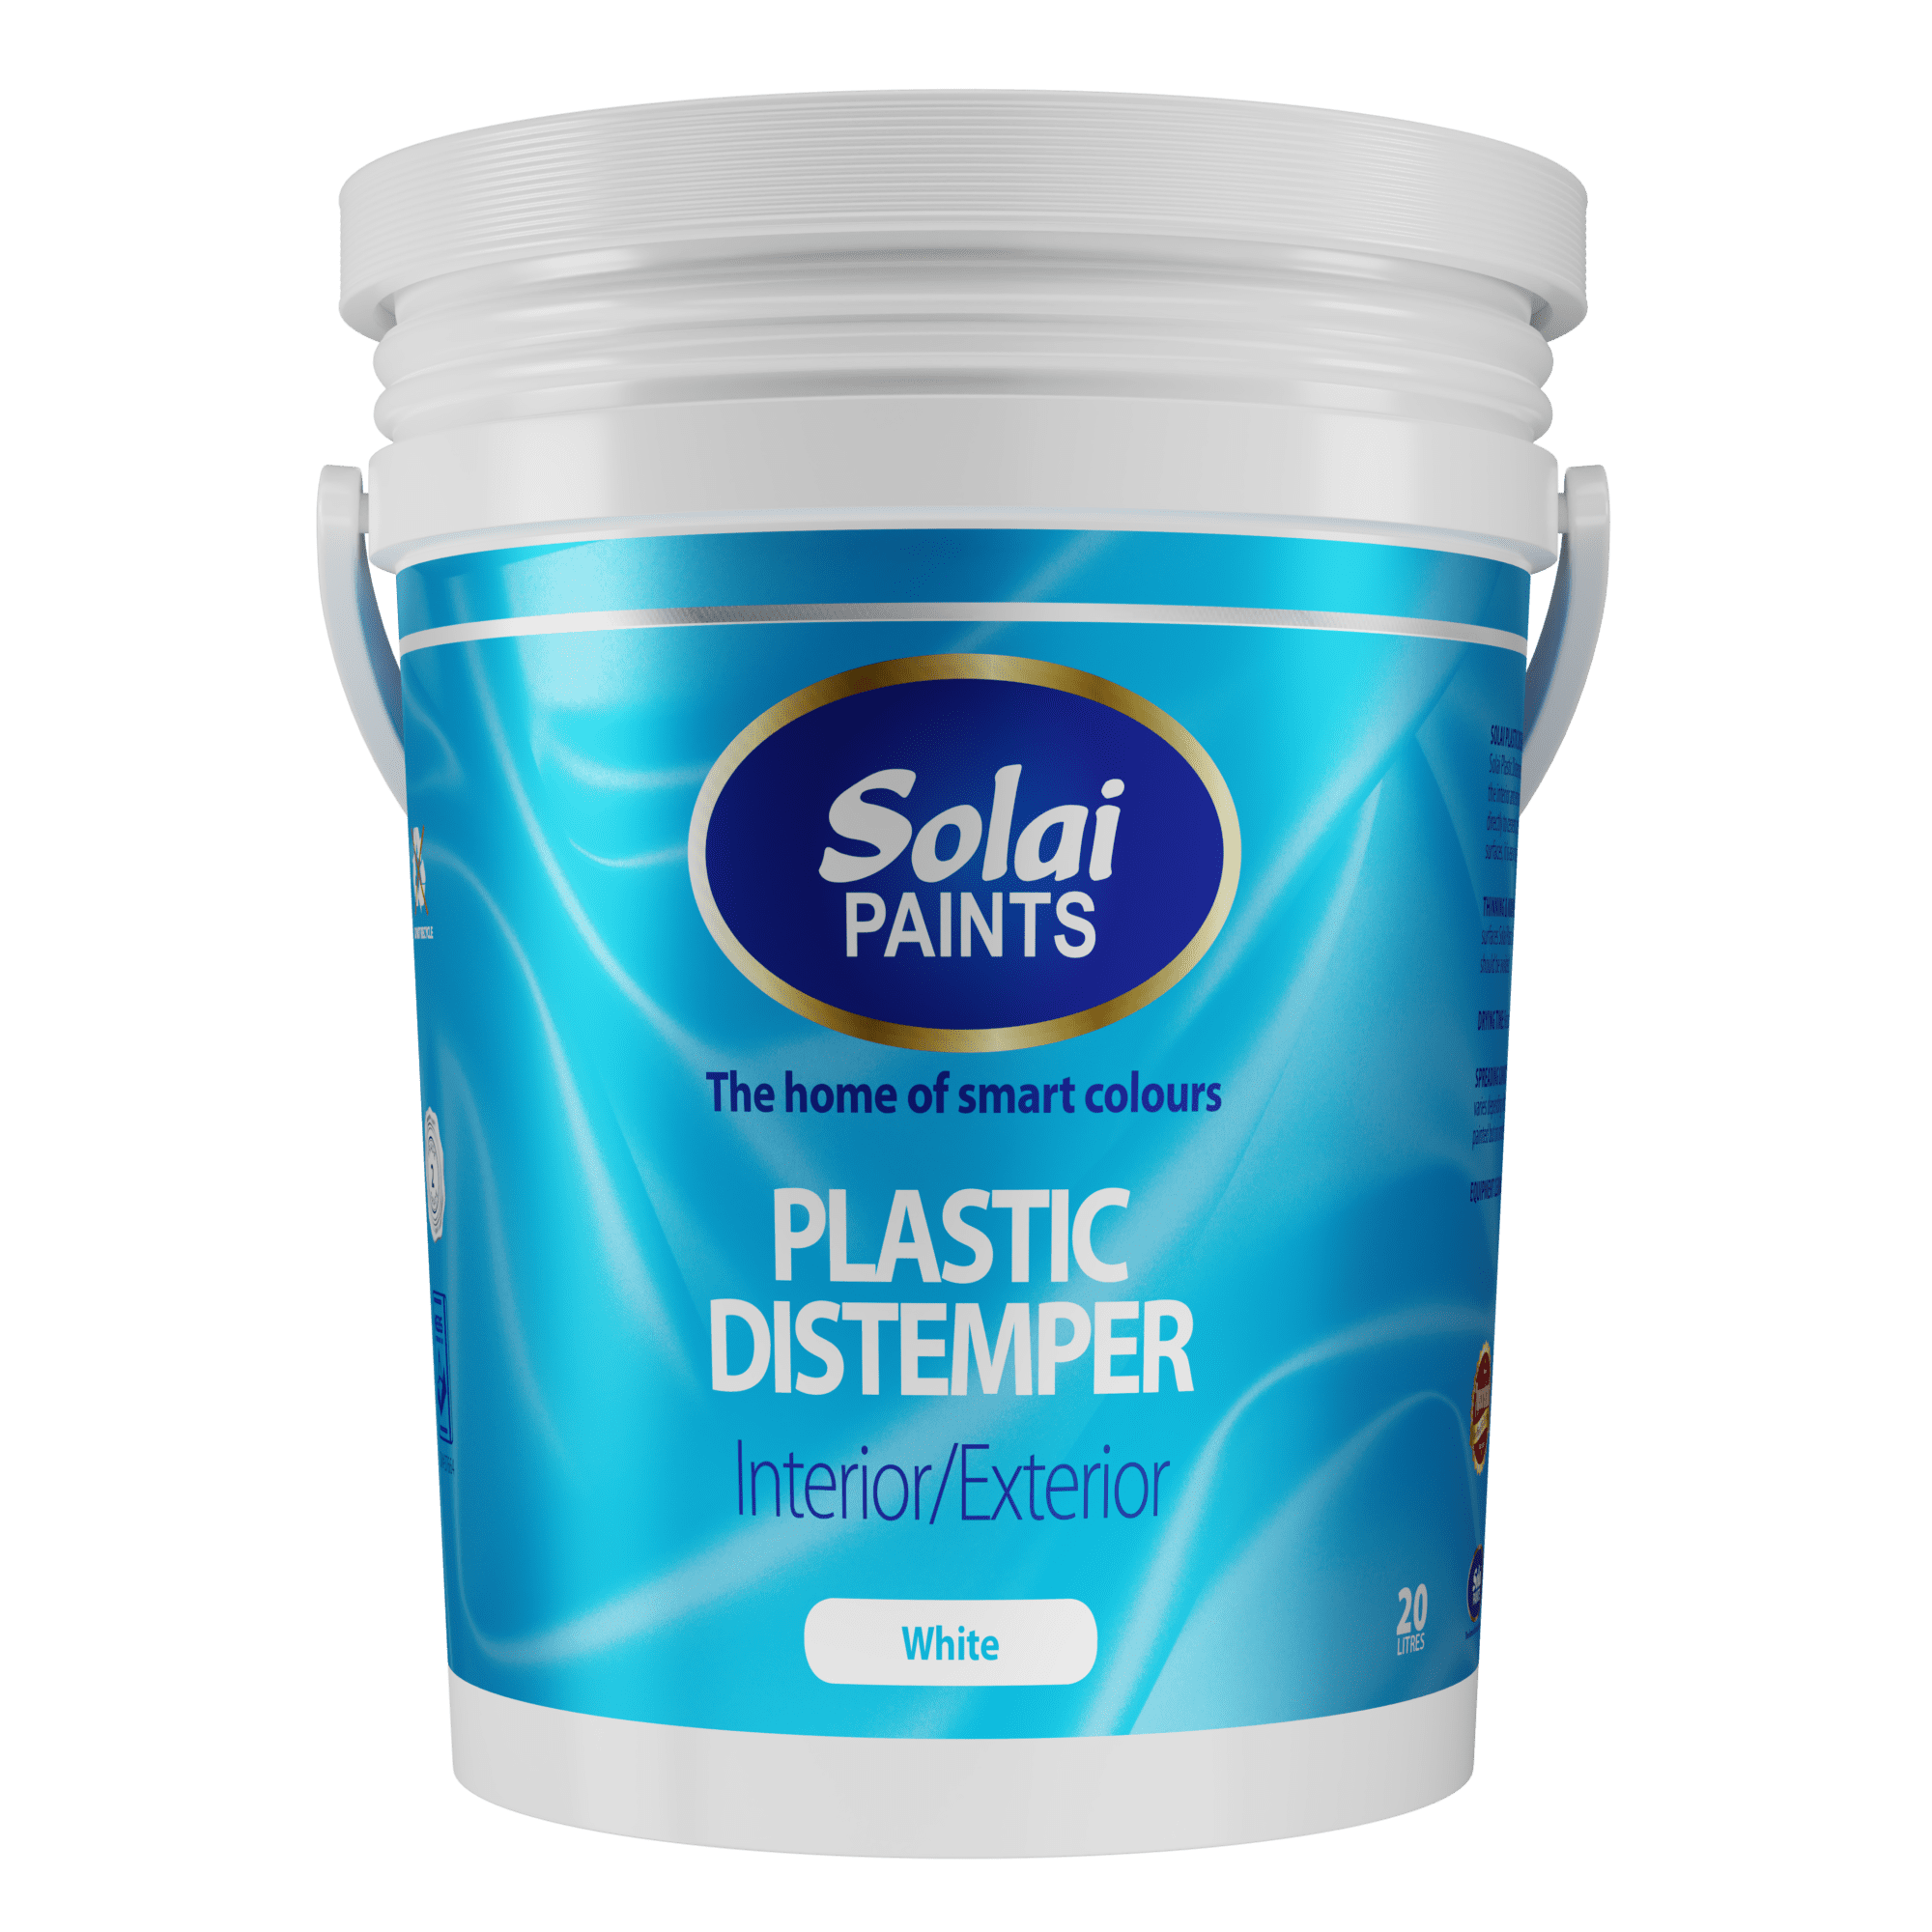 Solai Plastic Distemper, Cheapest undercoat, affordable emulsion paint, Low farmers paint, Best paints for tenant